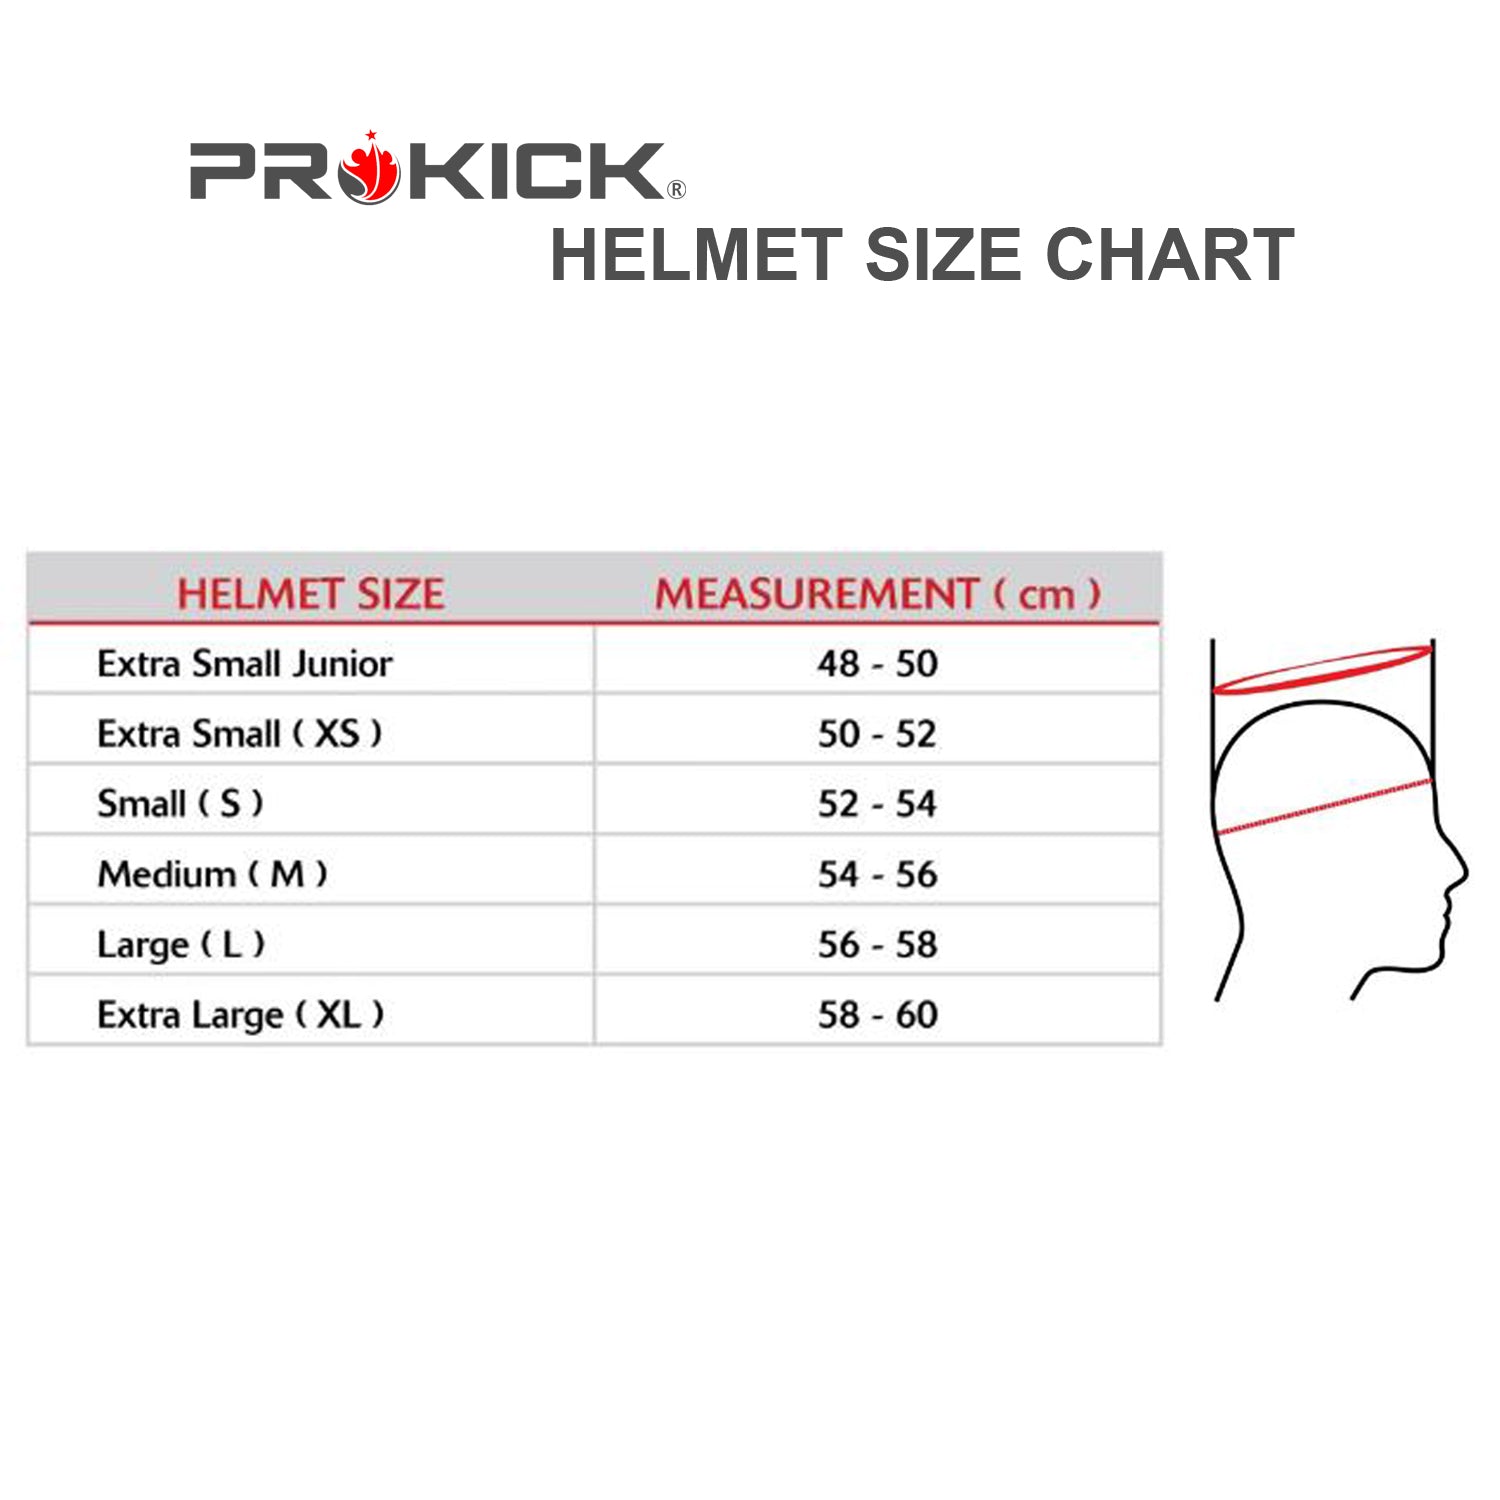 Prokick Pioneer Cricket Helmet with Adjustable Steel Grill, Navy - Best Price online Prokicksports.com